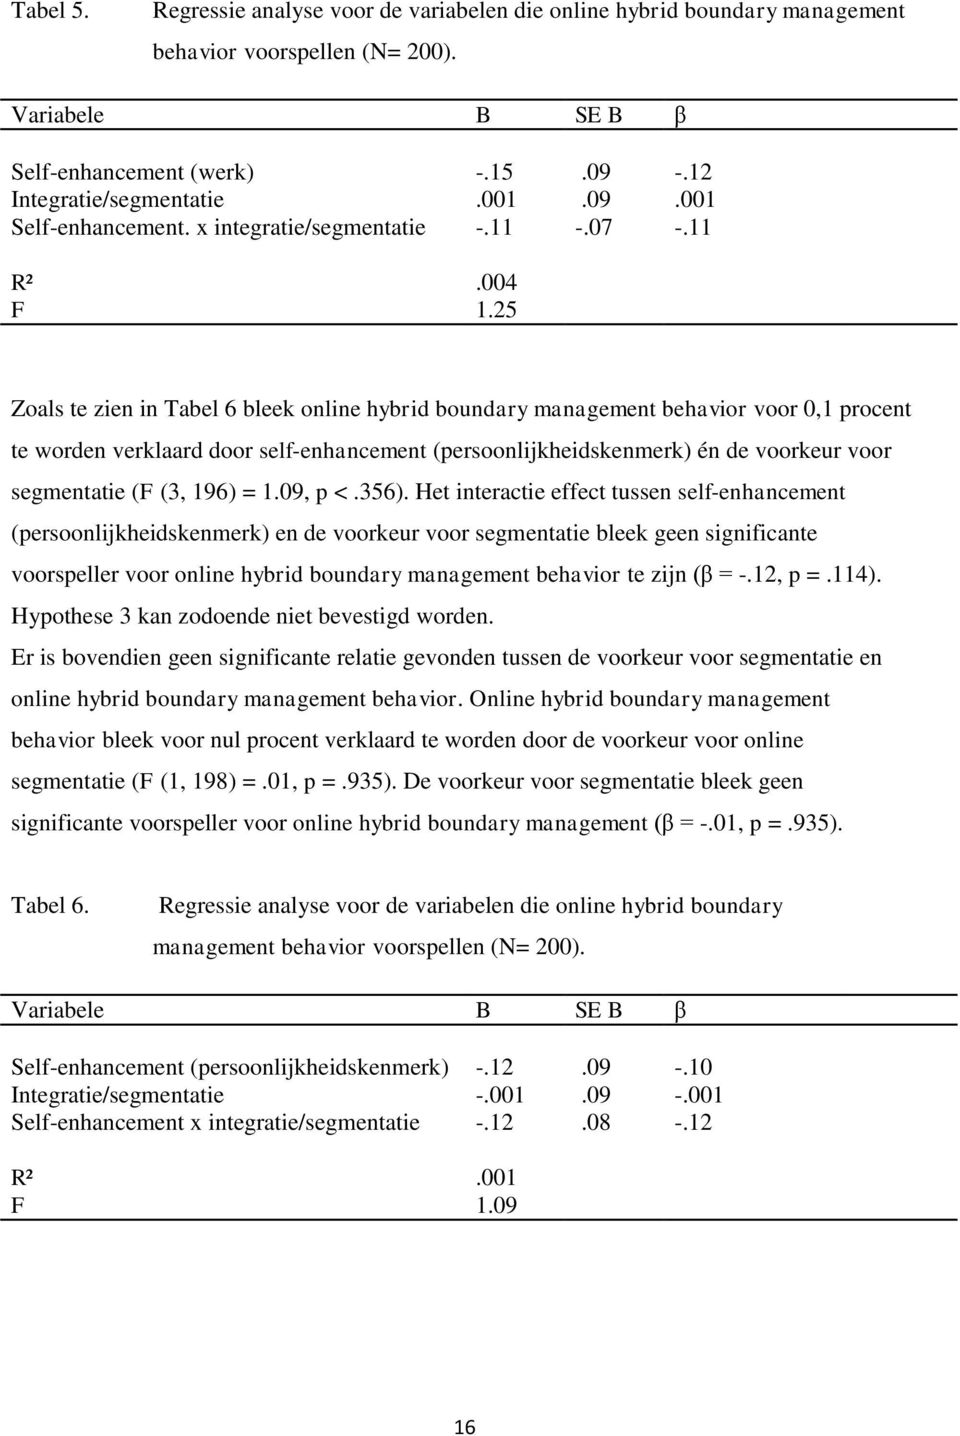 25 Zoals te zien in Tabel 6 bleek online hybrid boundary management behavior voor 0,1 procent te worden verklaard door self-enhancement (persoonlijkheidskenmerk) én de voorkeur voor segmentatie (F